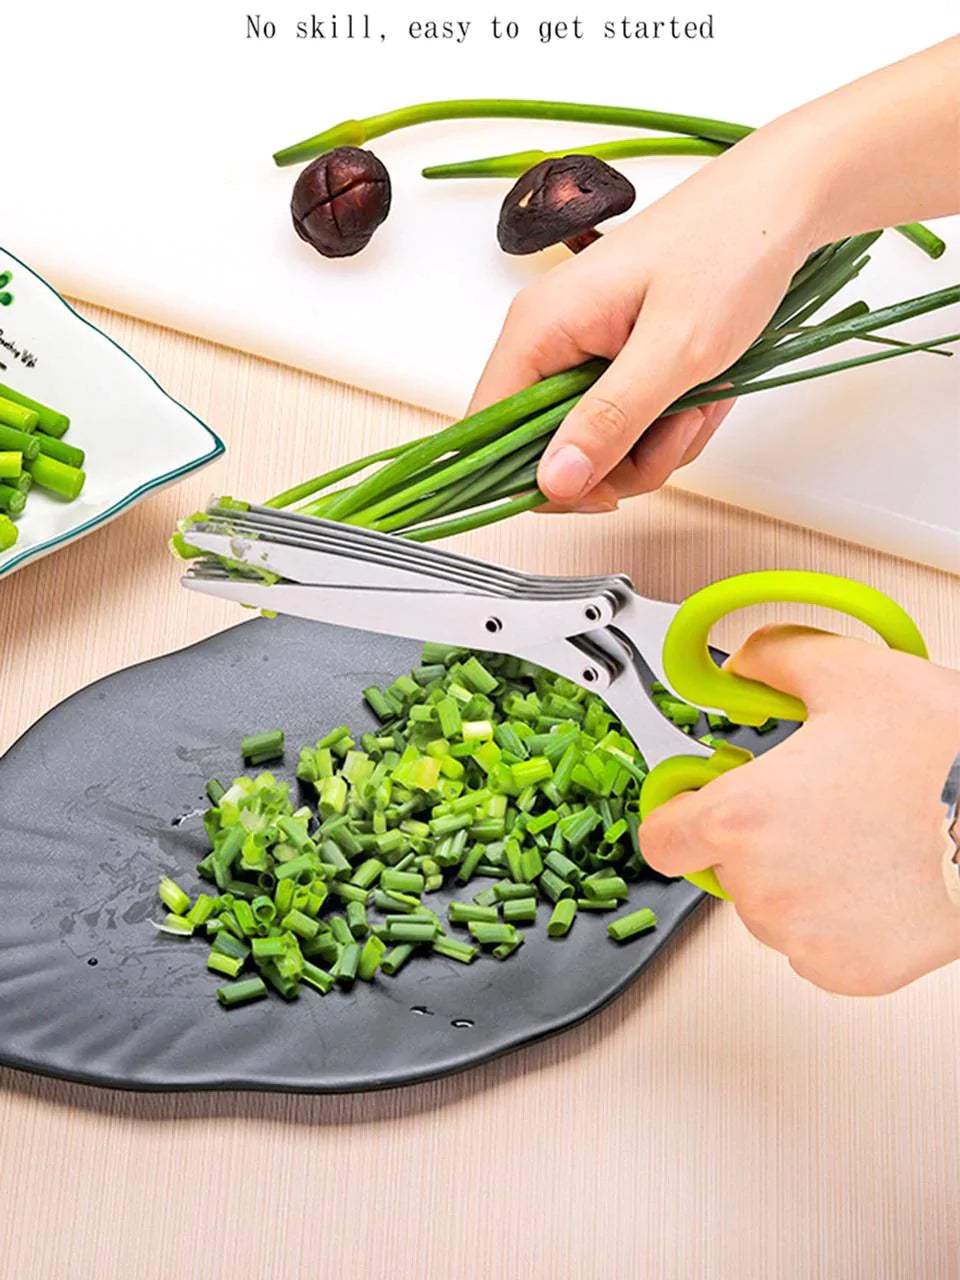 Multilayer Kitchen Scissors